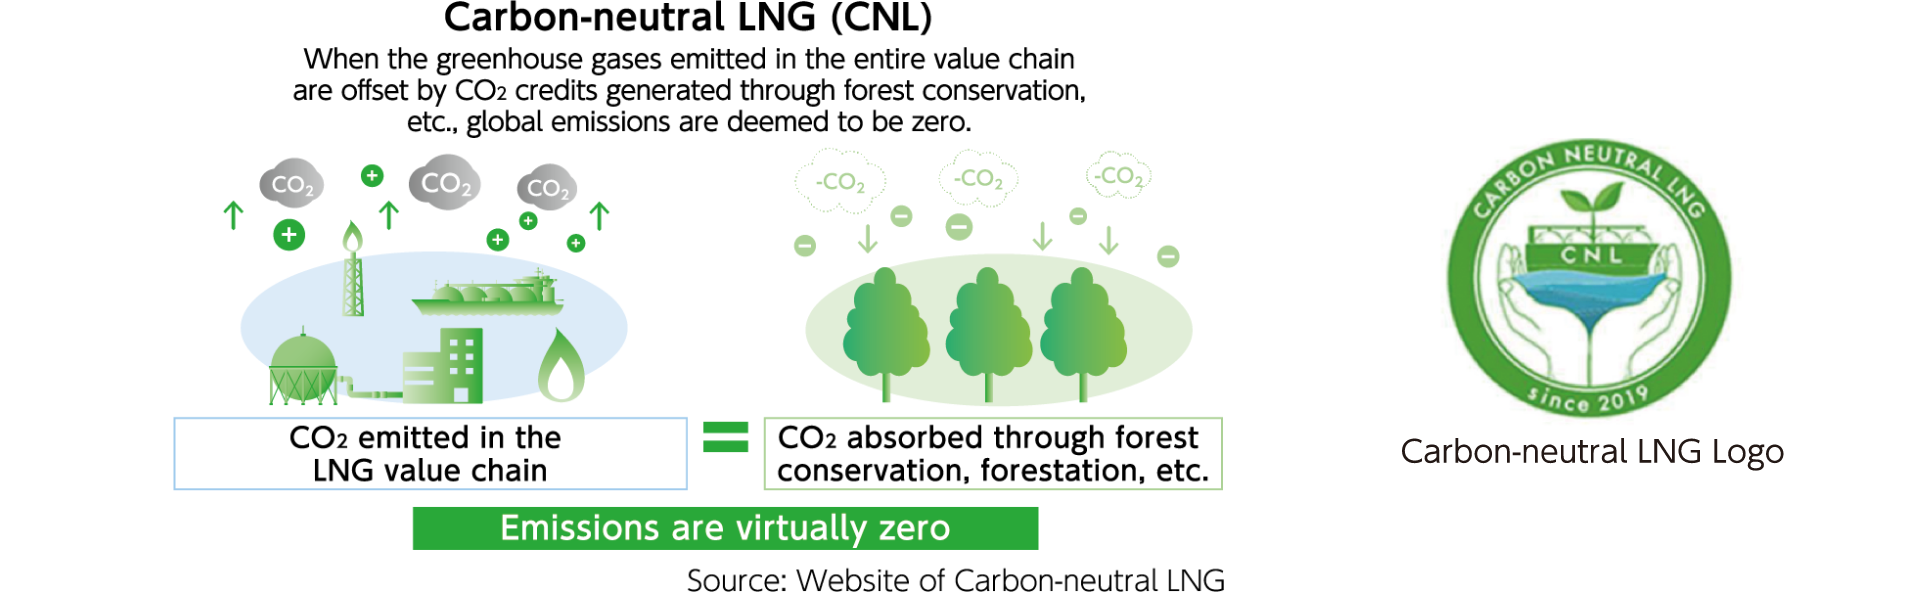 Carbon-neutral LNG (CNL)